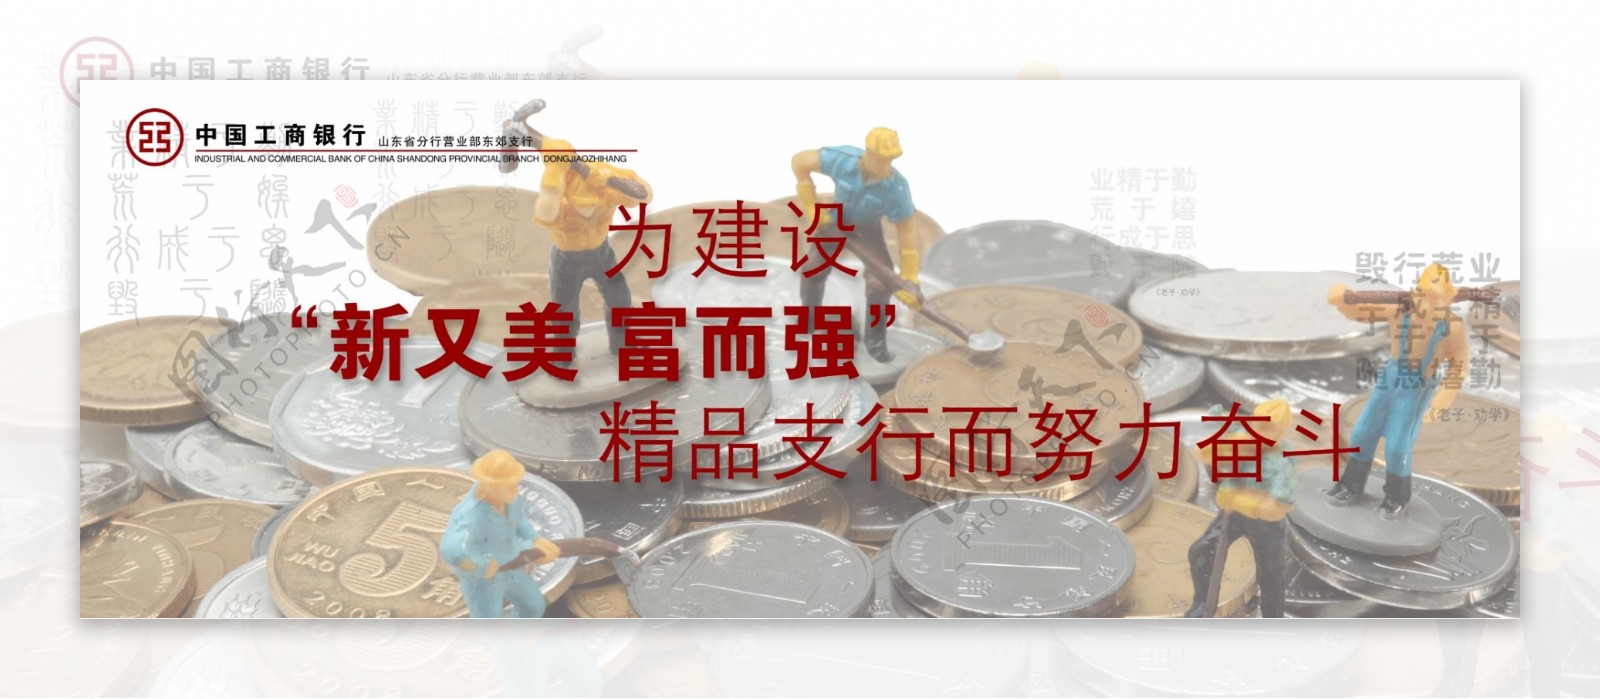 中国工商银行图片